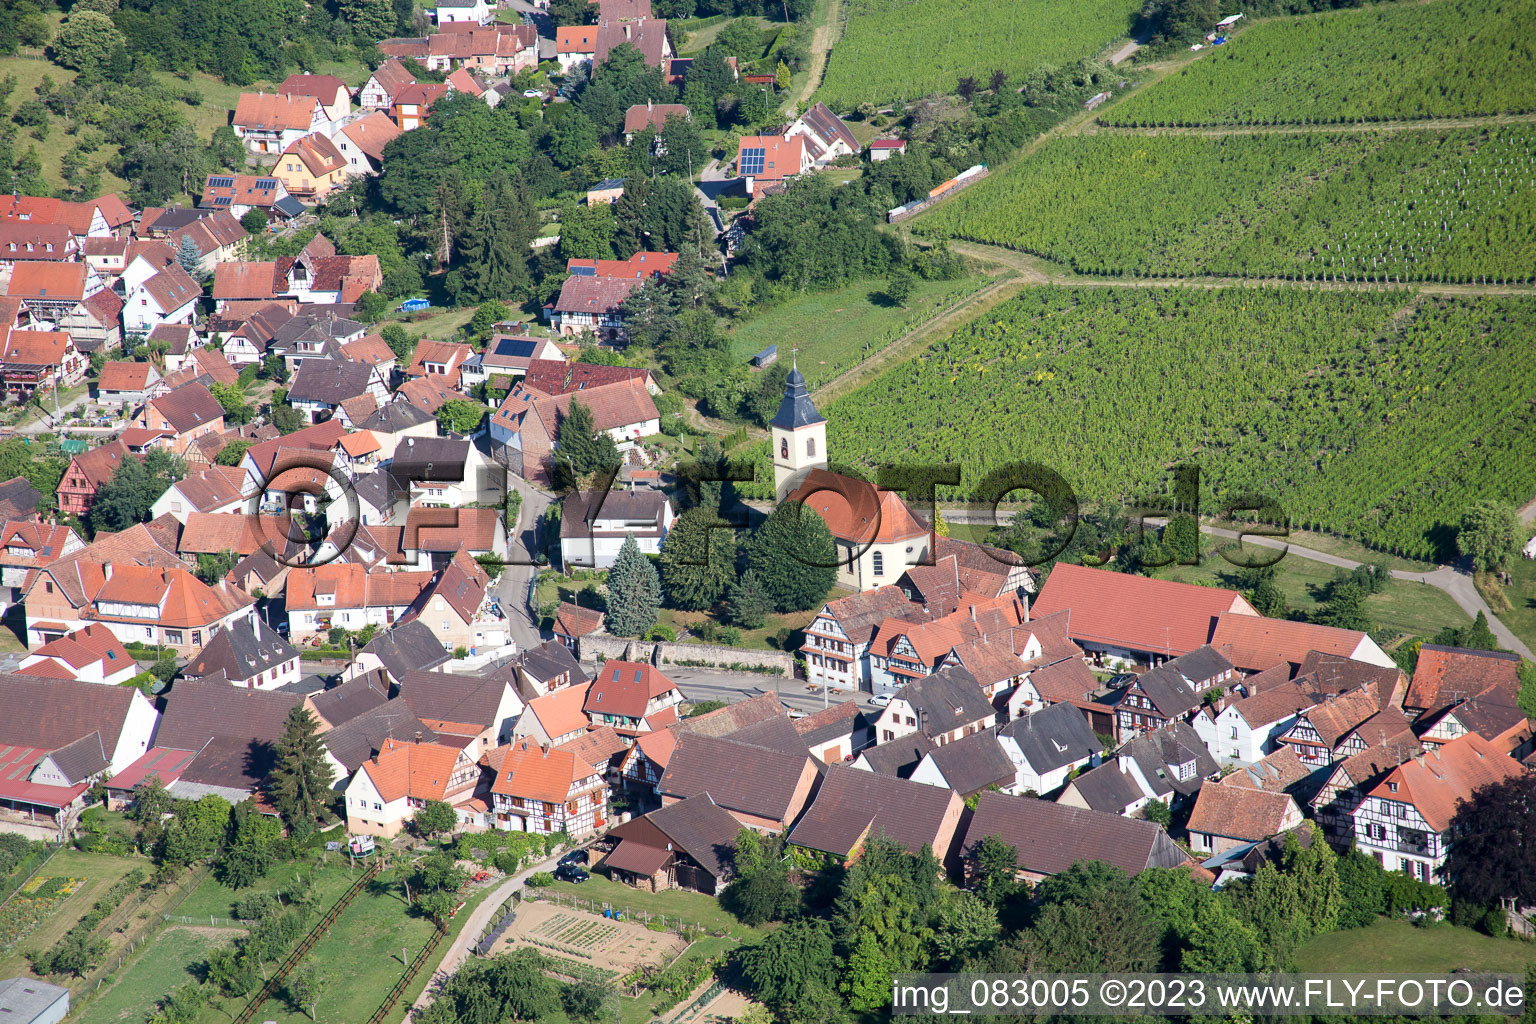 Vue aérienne de Rott dans le département Bas Rhin, France